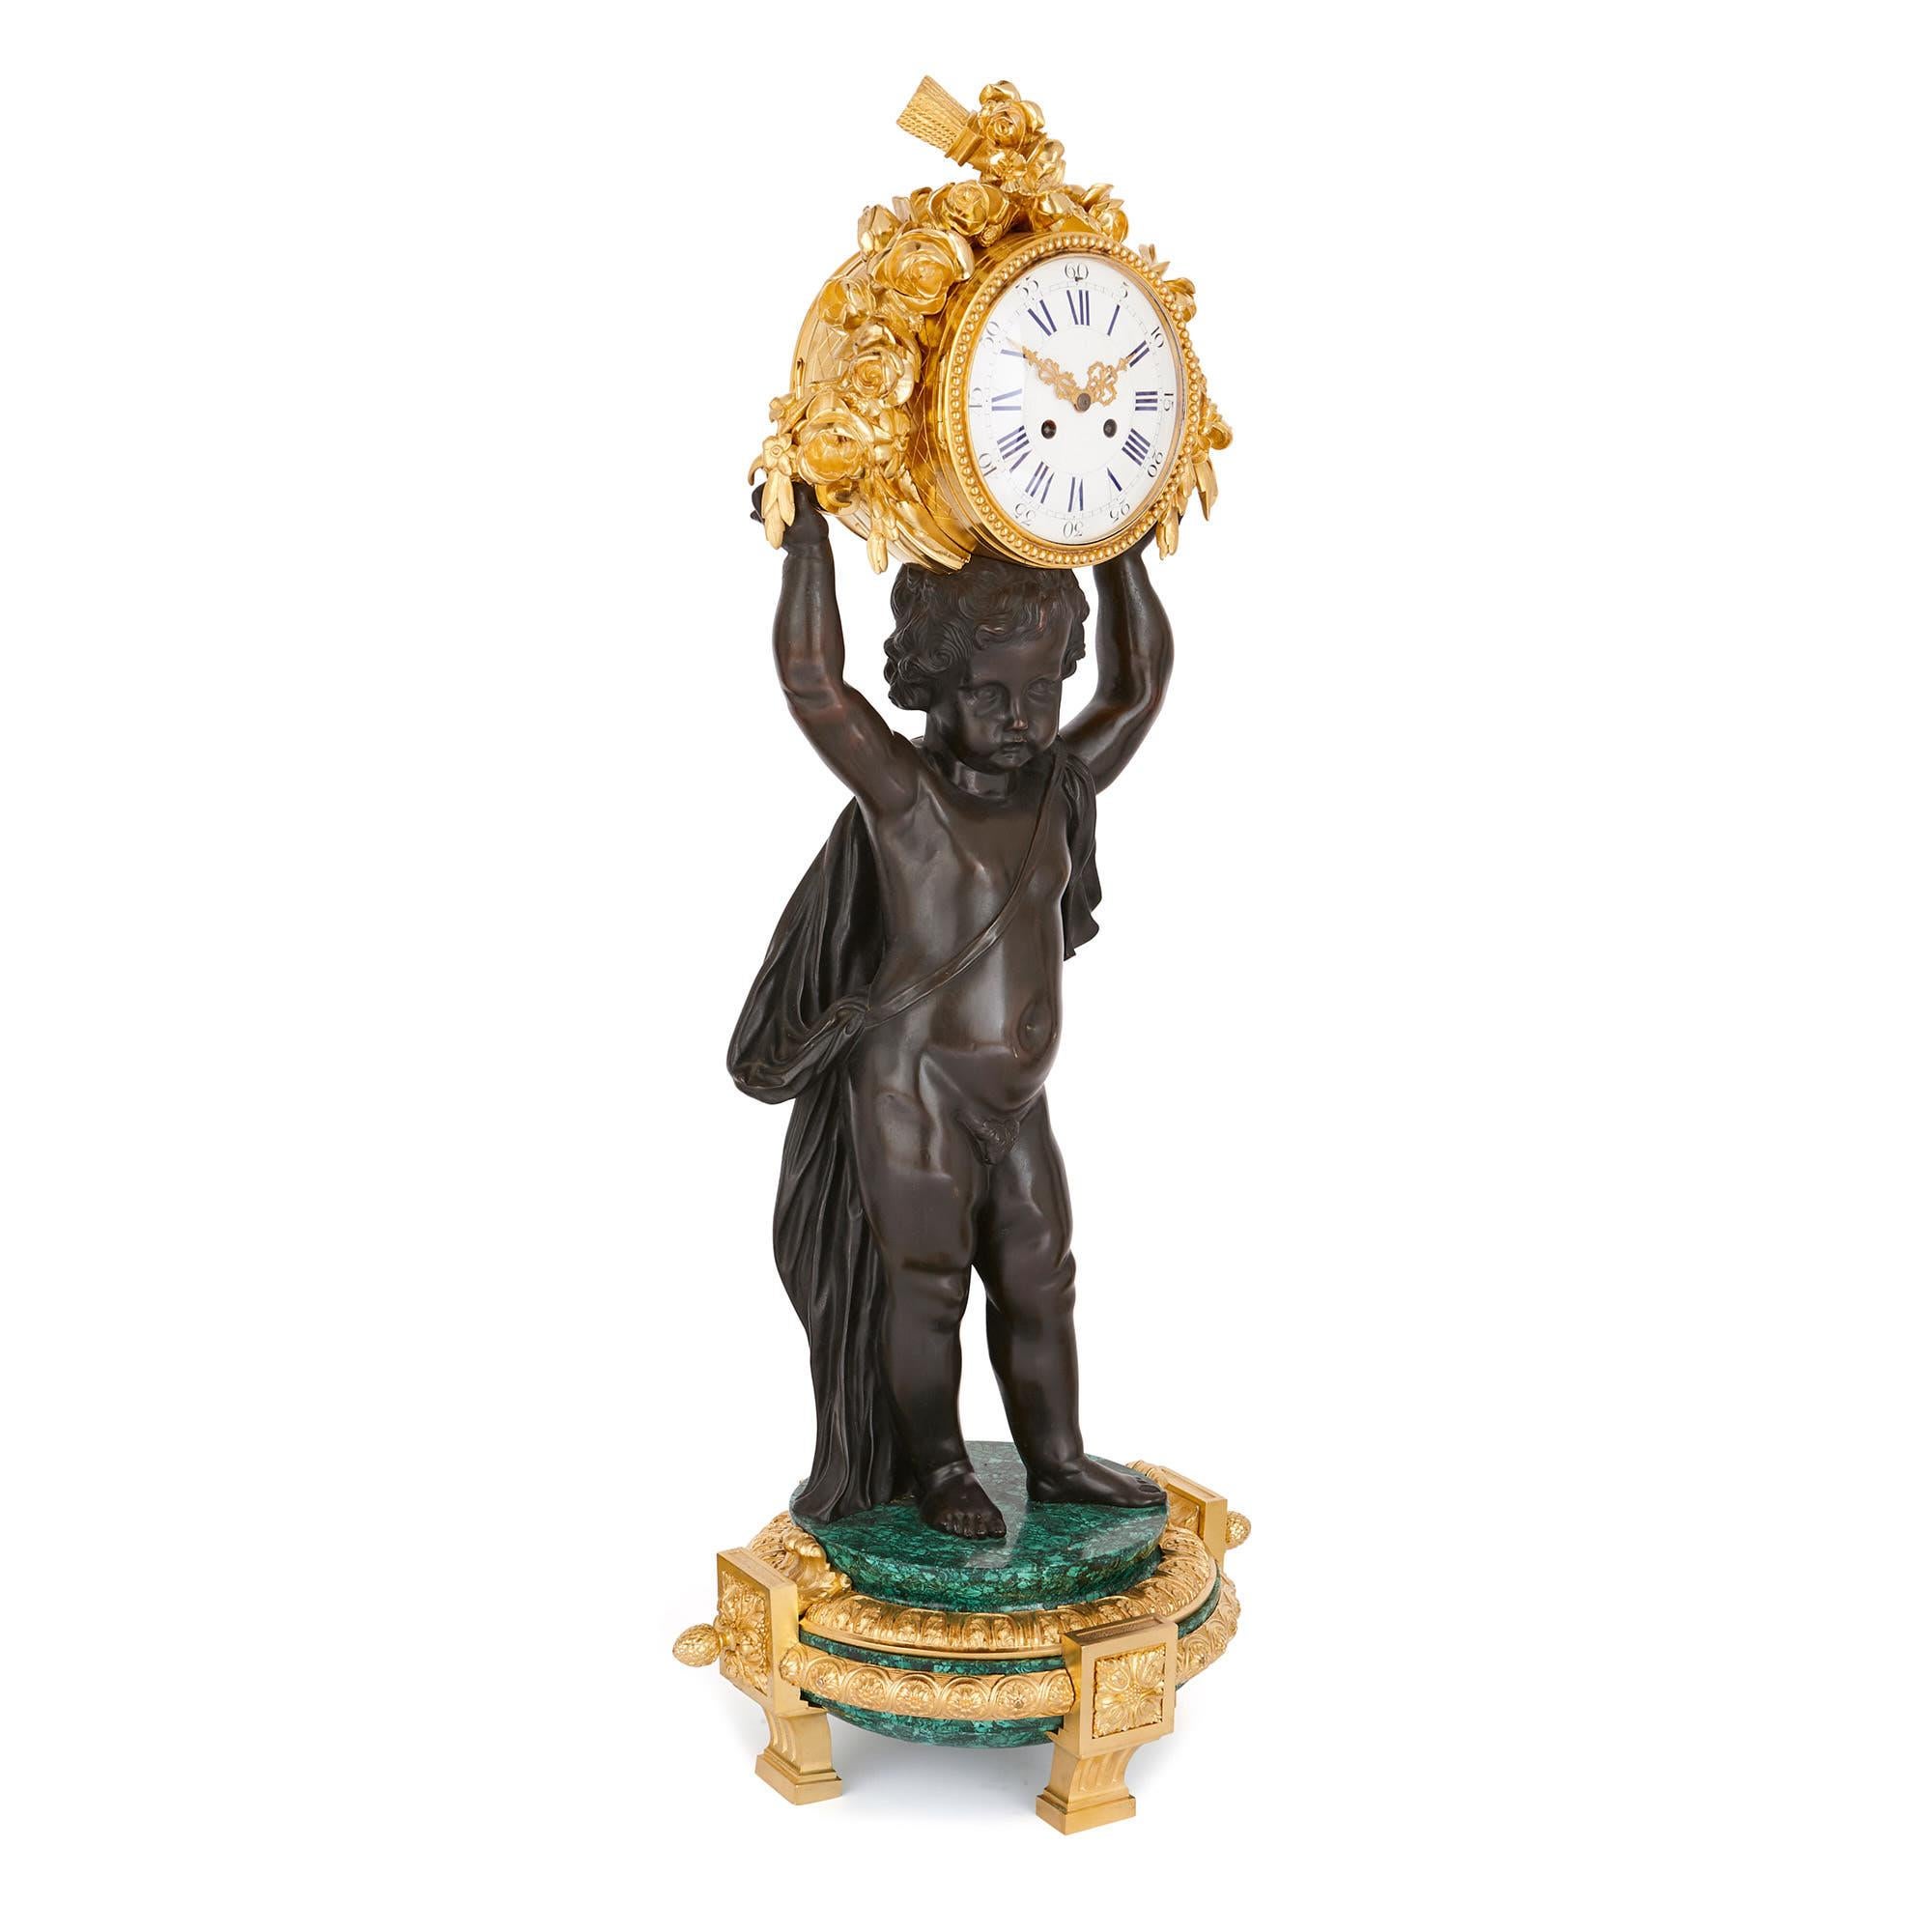 Dieses majestätische Uhrenset im neoklassischen Stil - die Uhr misst 1 m und der Kandelaber 1,11 cm in der Höhe - ist ein wahrer Blickfang in jedem Raum. Mit seinen prächtigen Putten aus patinierter Bronze überschreitet das Design die Grenzen